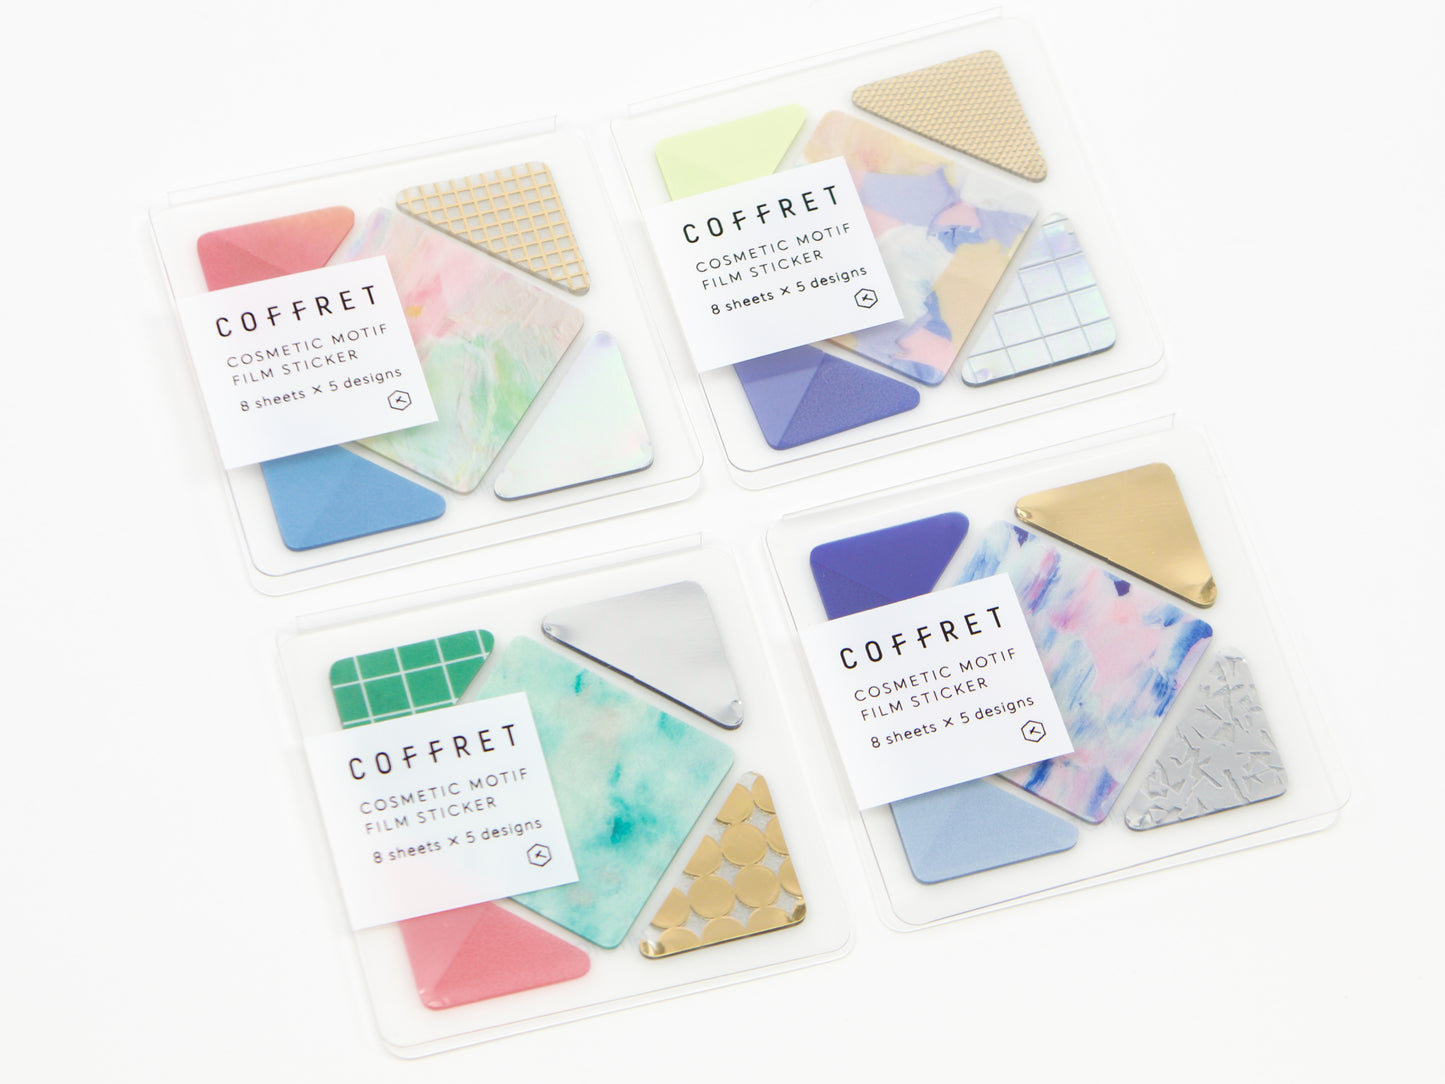 Hitotoki Coffret Cosmetic Motif Film Sticker Square and Triangle